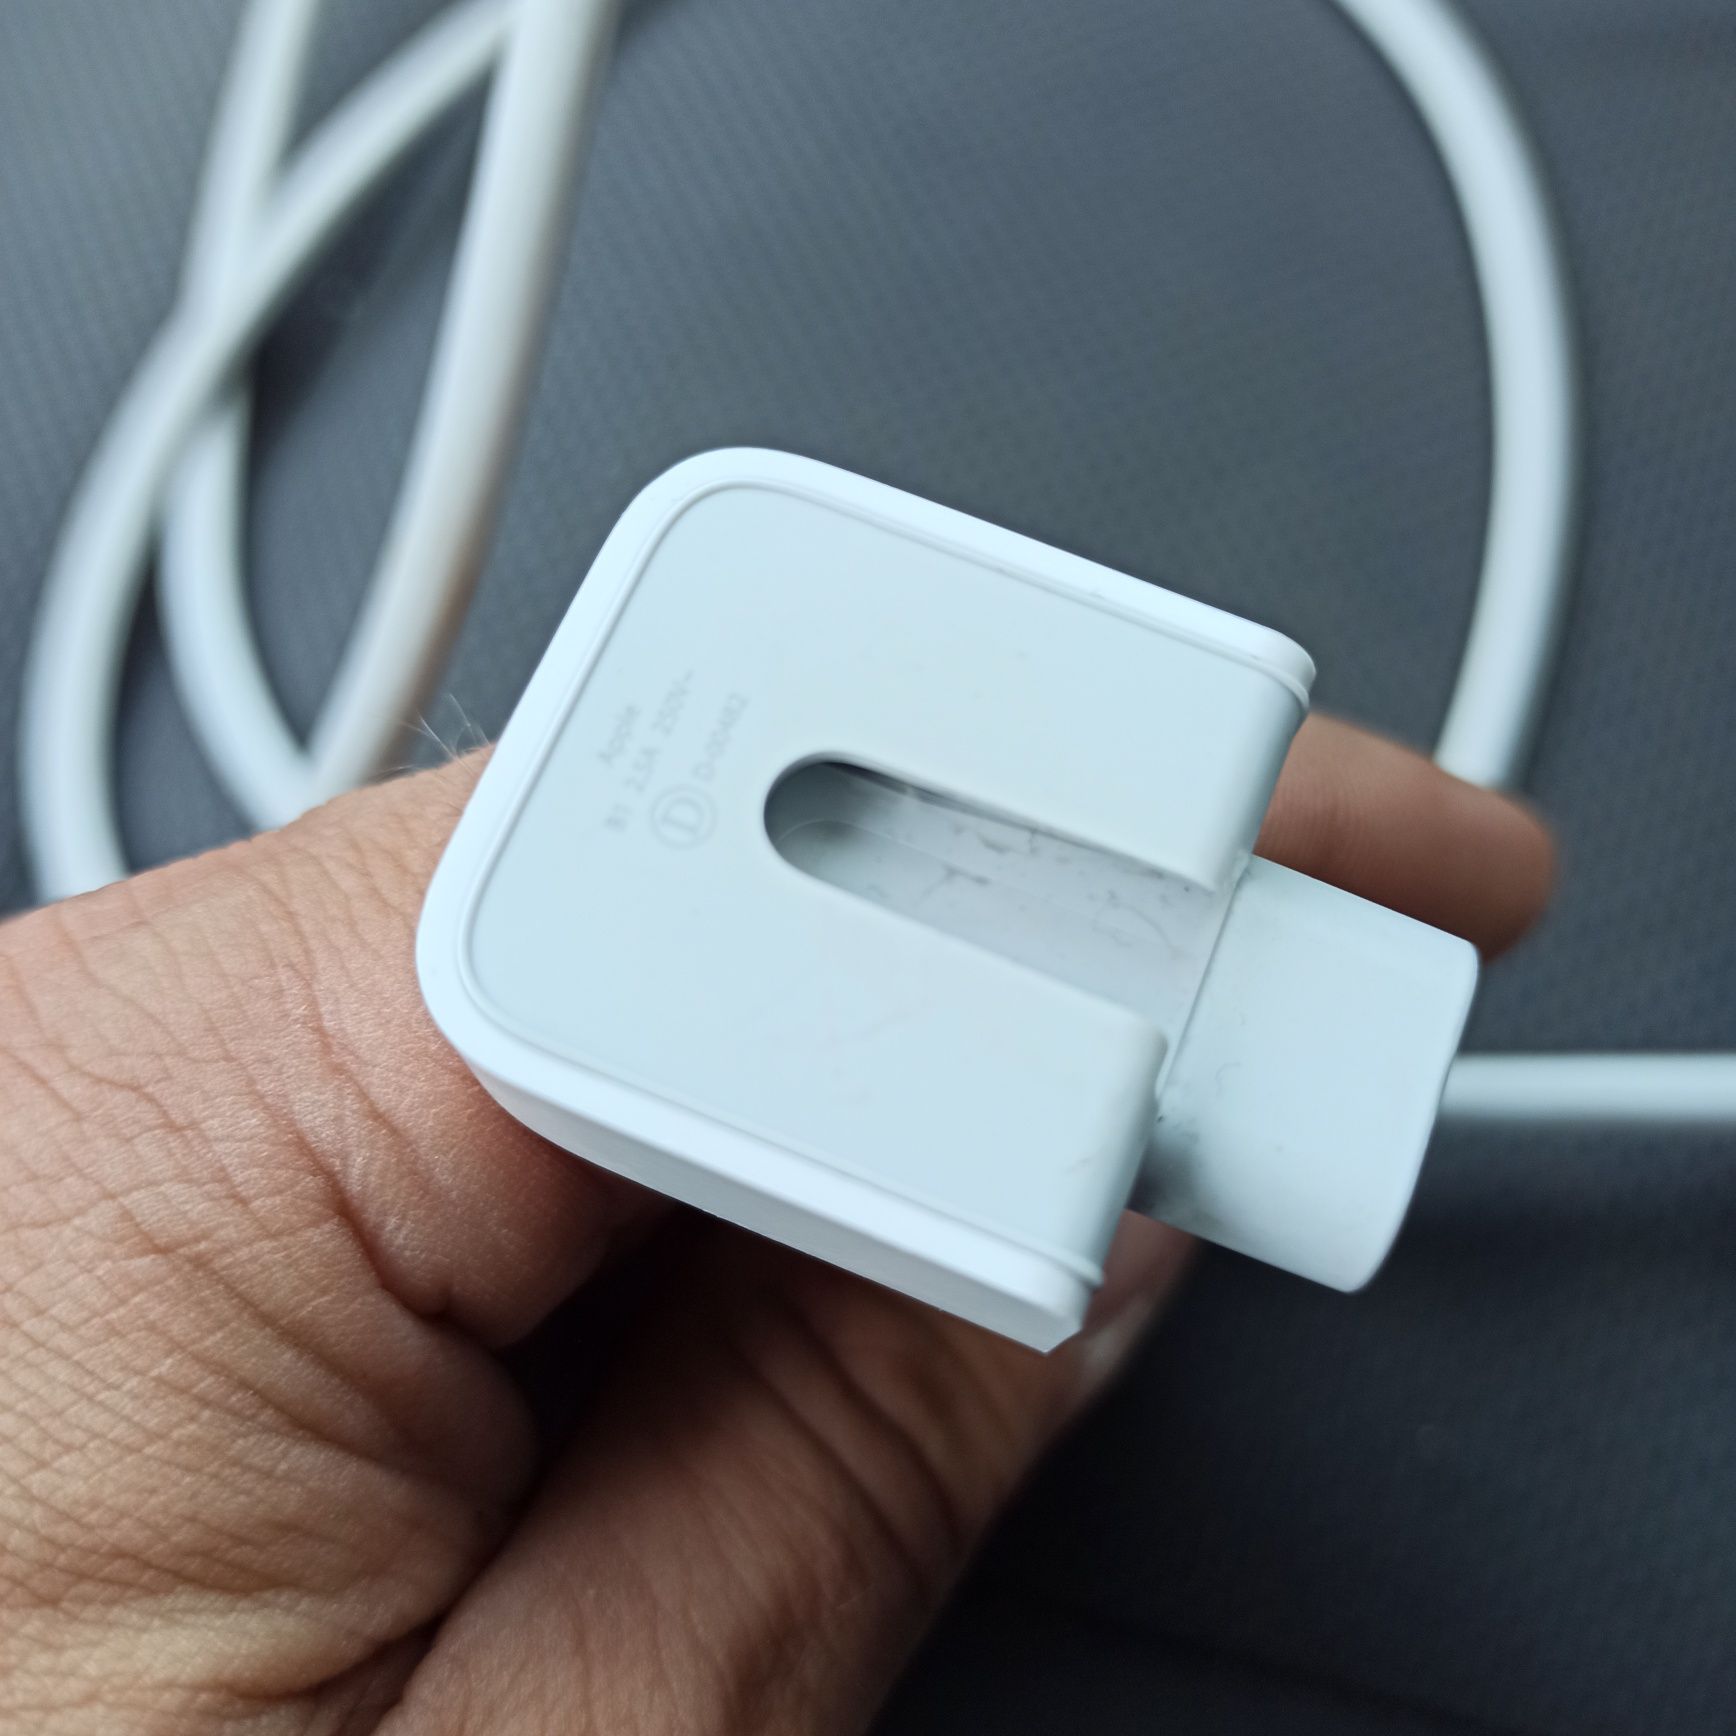 Kabel zasilający oryginalny firmy Apple 2m.